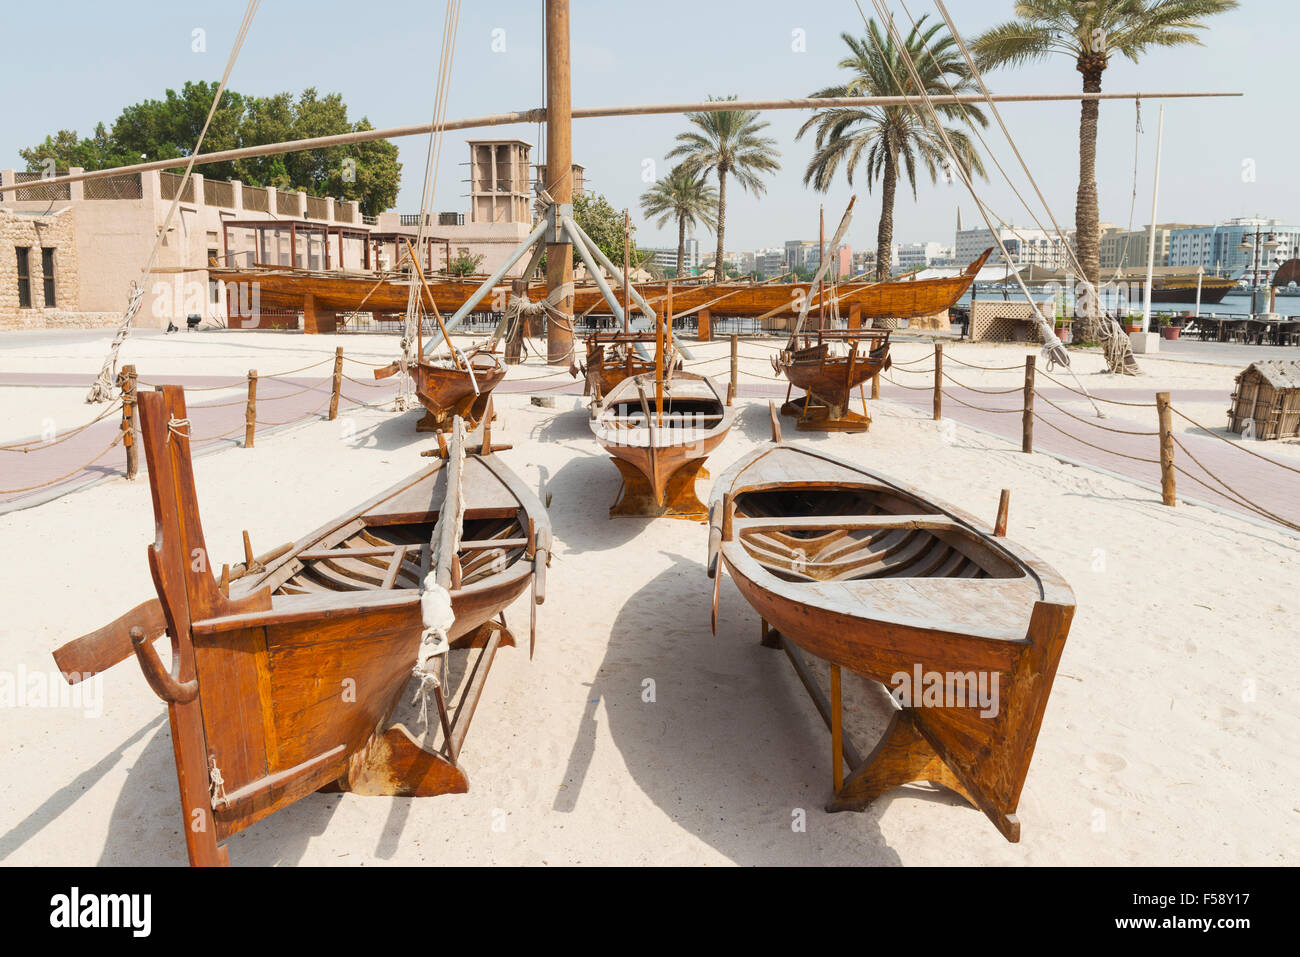 Traditionelle Holzboote auf dem Display an das Diving Village Freilichtmuseum im Bereich Kulturerbe am Al Shindagha in Dubai Vereinigte A Stockfoto